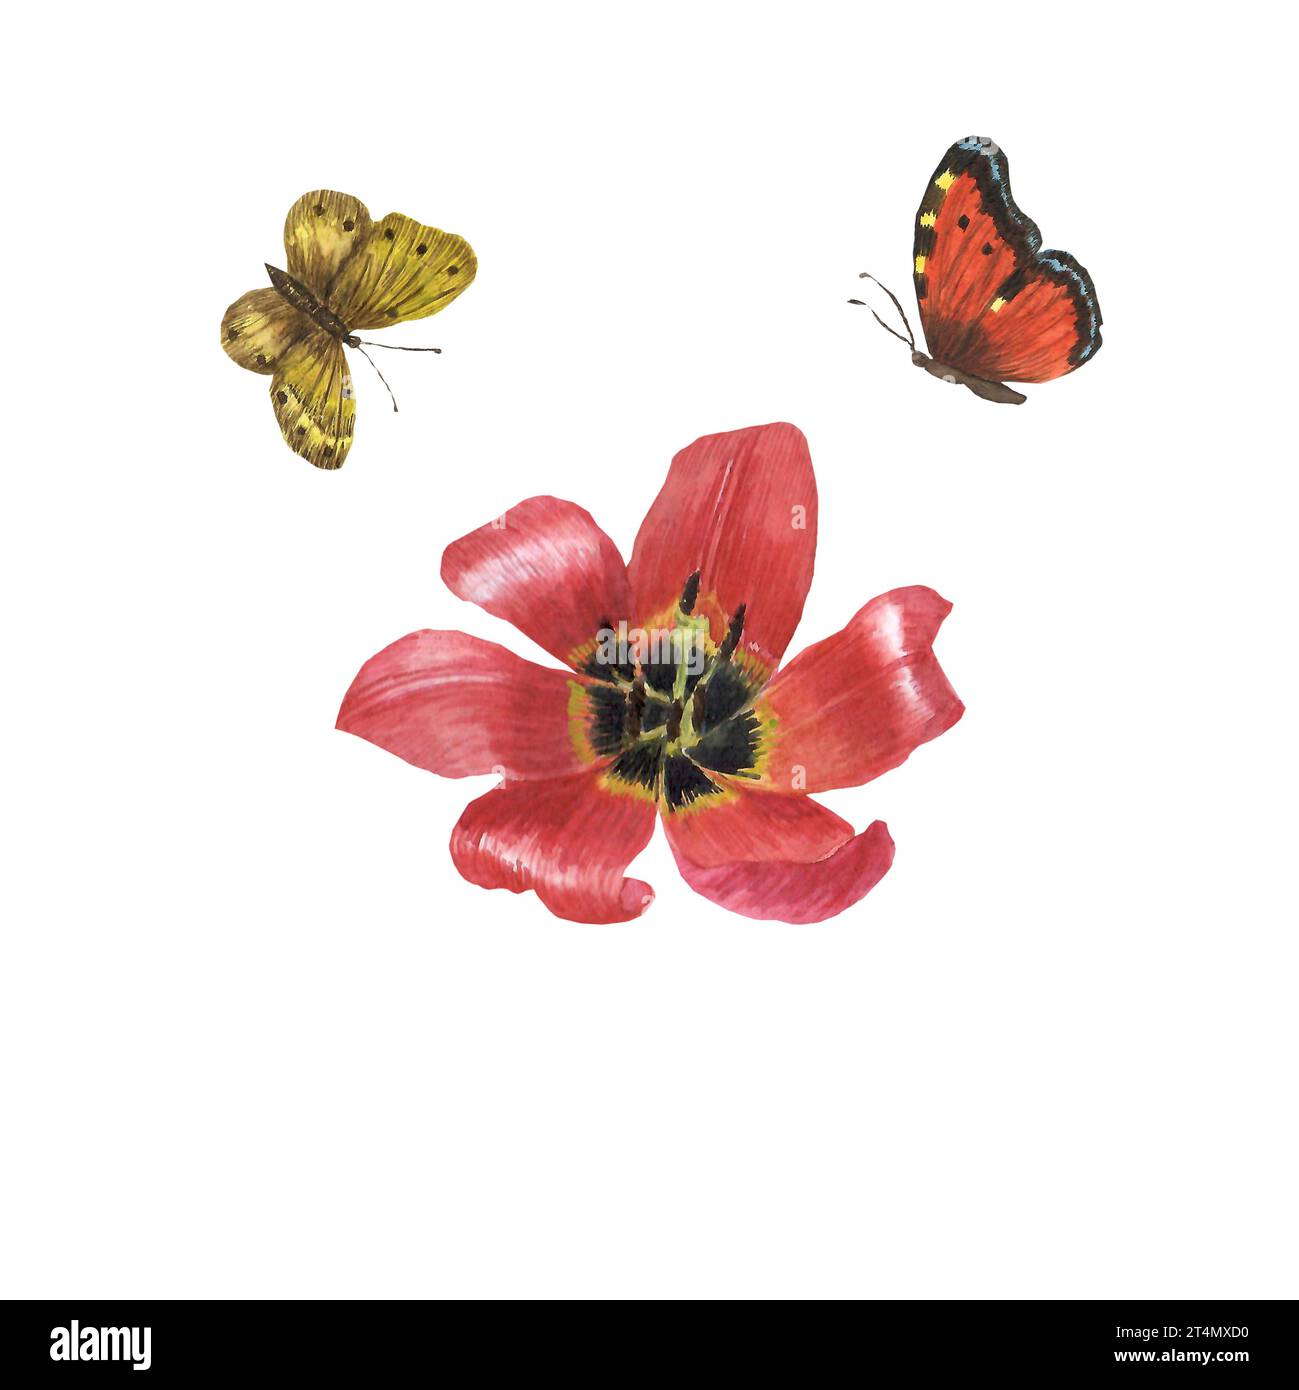 Tulipe de fleur d'aquarelle et papillons. Fleur botanique florale. Elément d'illustration isolé. Illustration aquarelle sur fond blanc. Banque D'Images